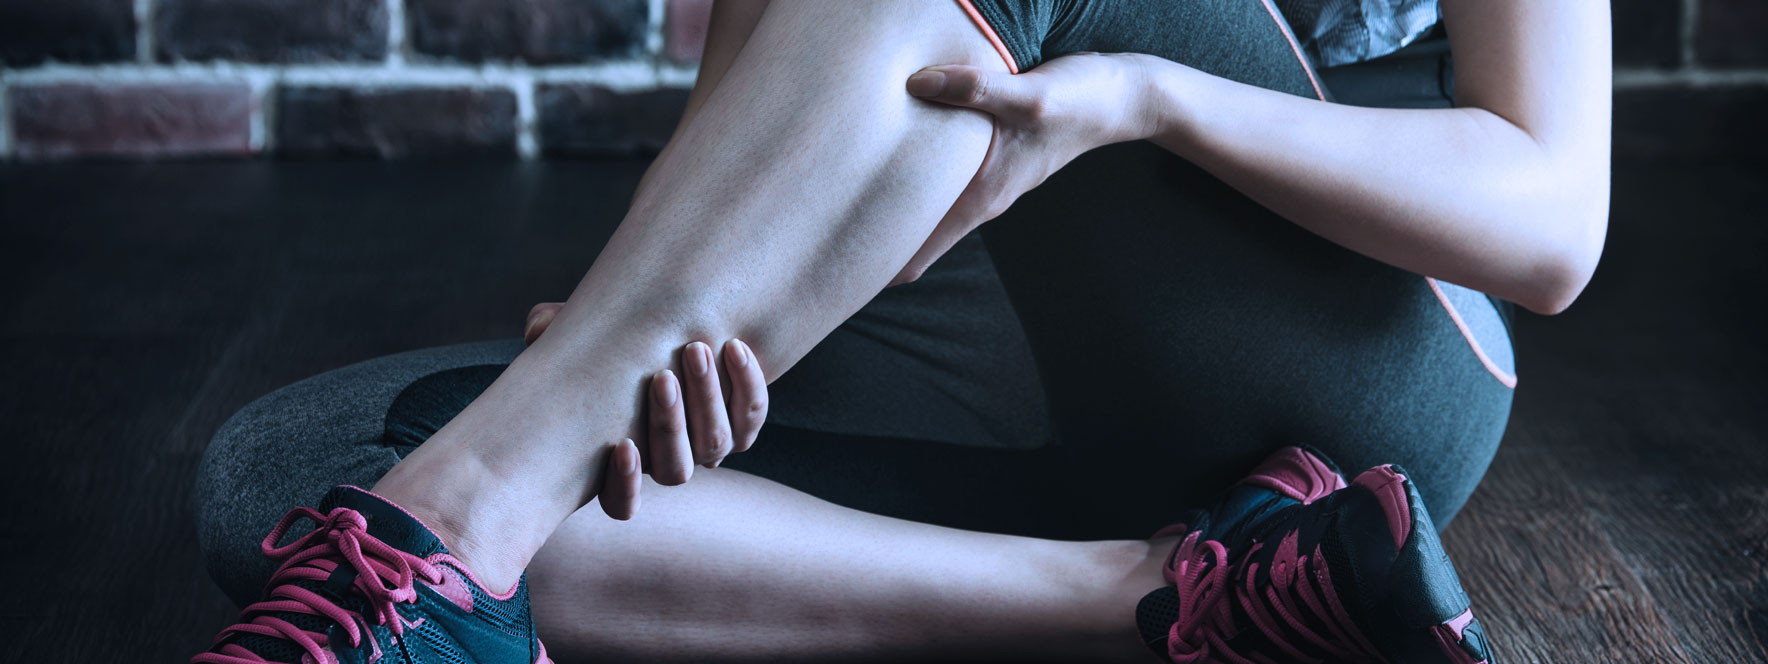 Le spasme musculaire: mécanismes et prévention - Blogue du Réseau